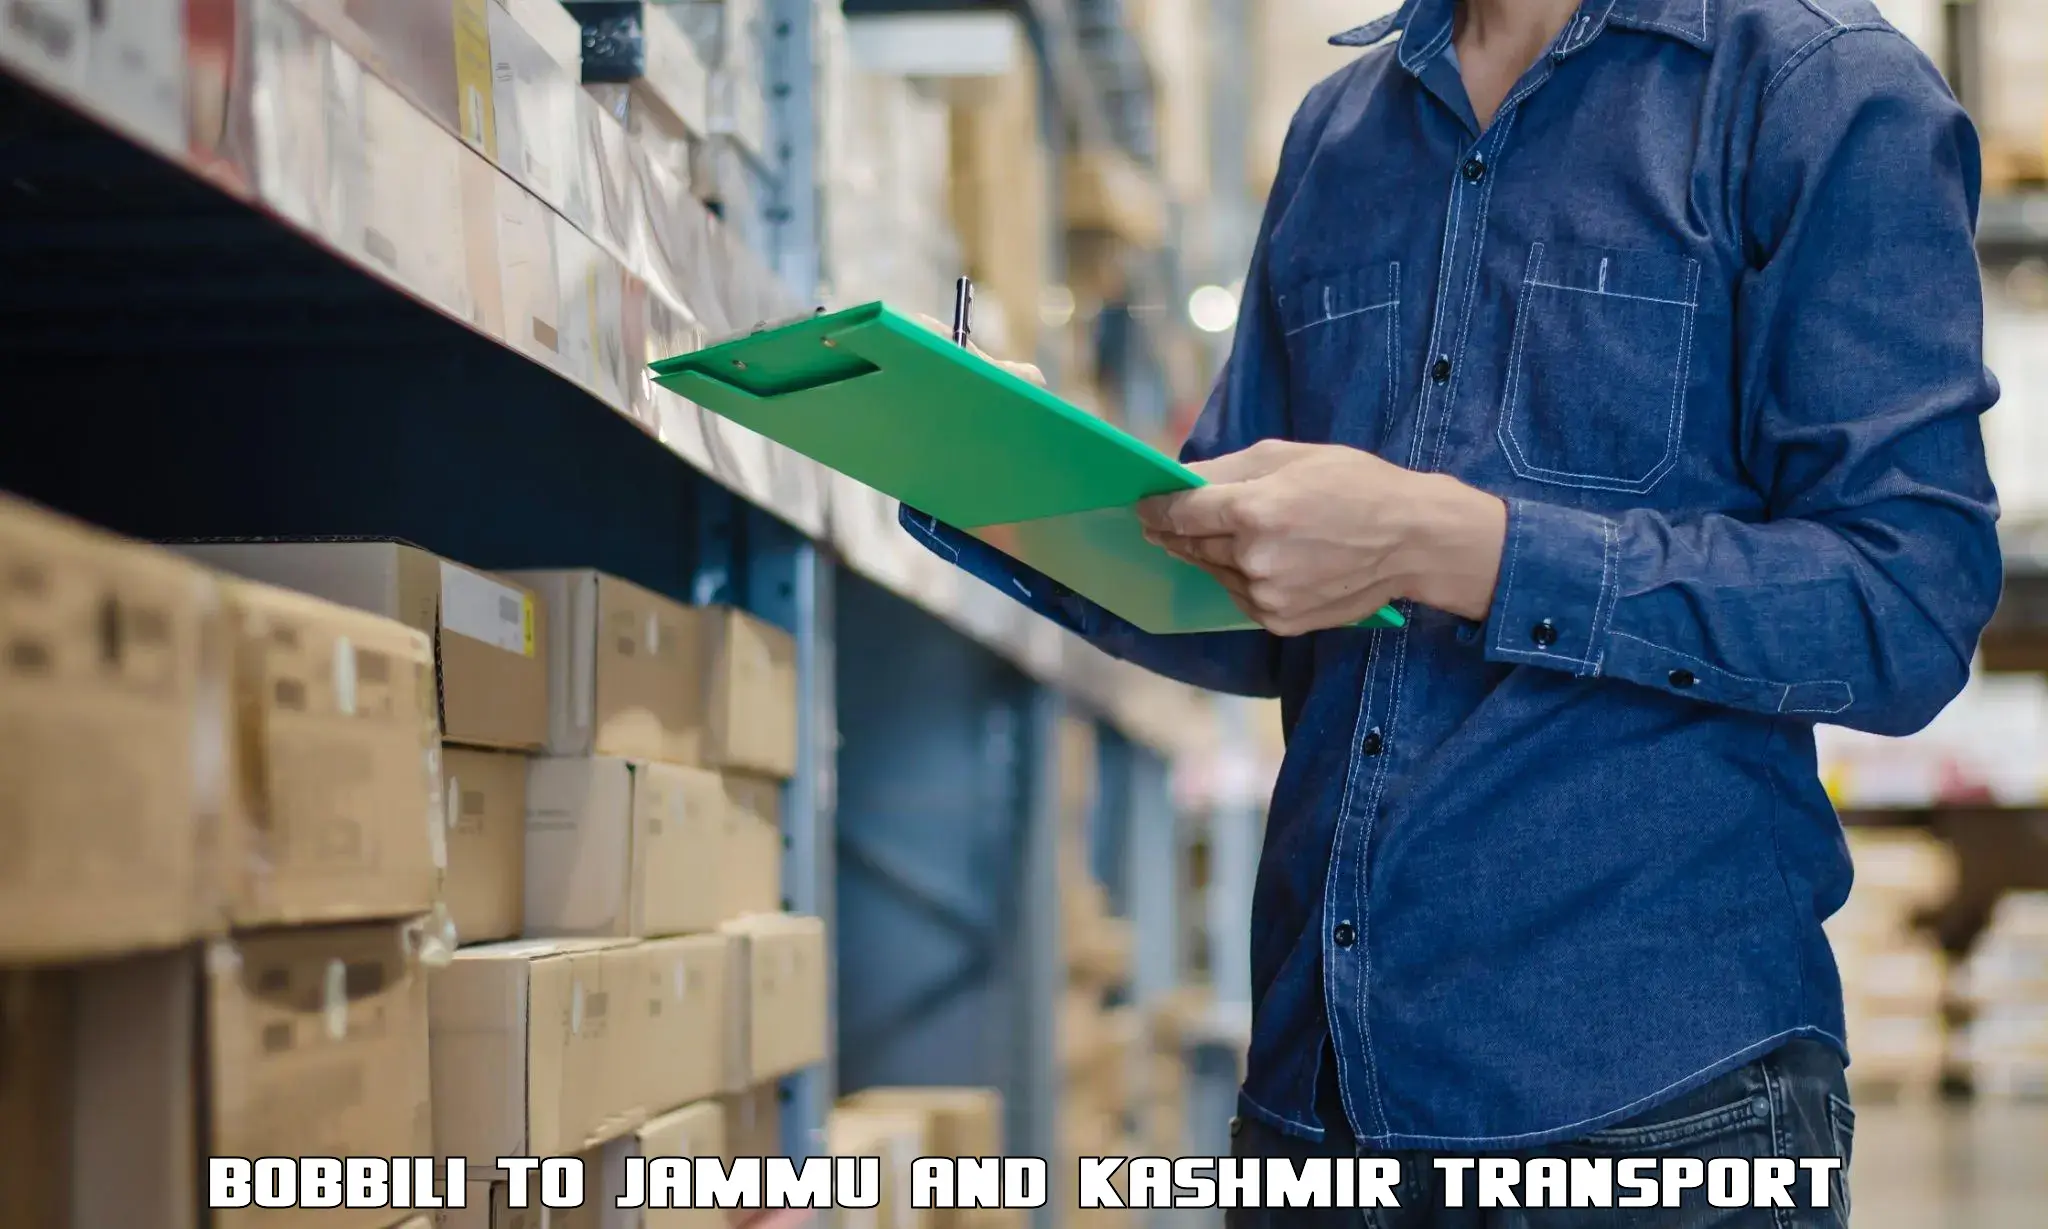 Nearest transport service Bobbili to IIT Jammu